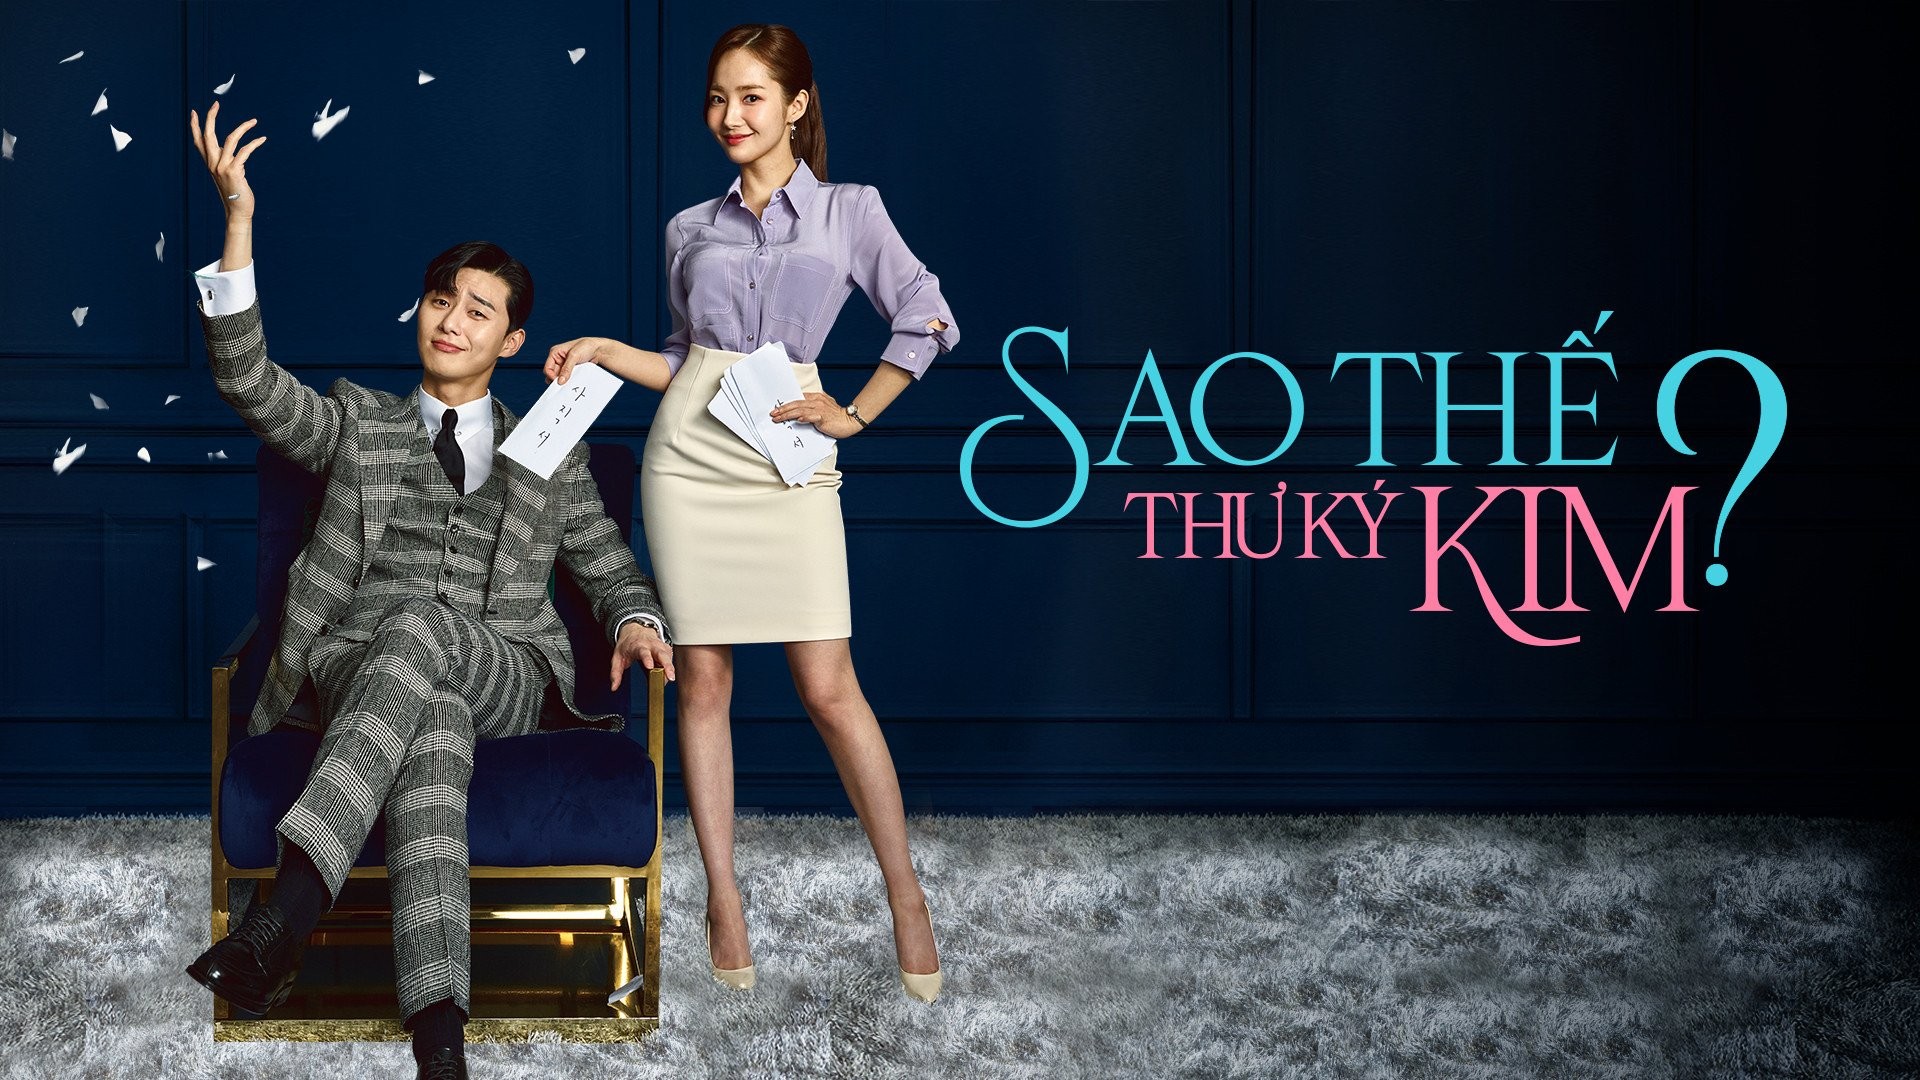 “Thư ký Kim sao thế” được đánh giá là một trong top phim Hàn Quốc hay nhất về tình yêu có ratting cao nhất